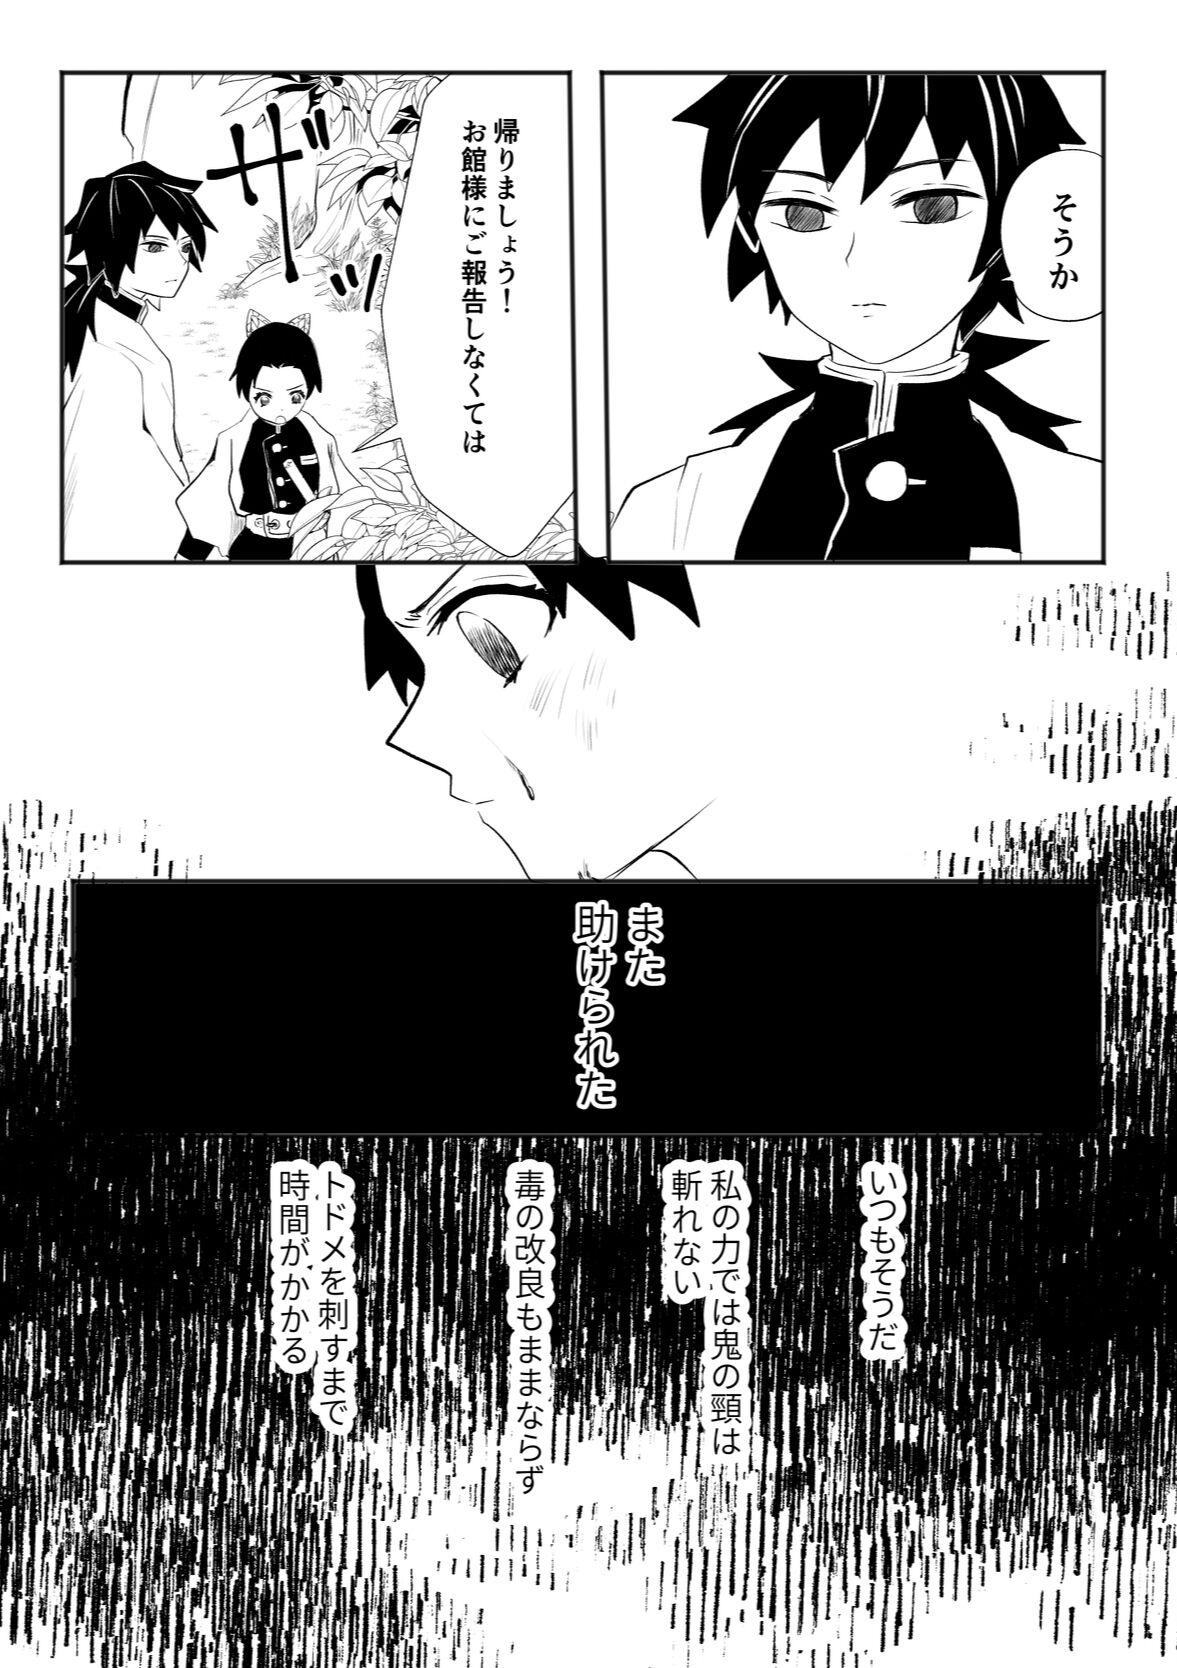 Load Hodokete Tokeru - Kimetsu no yaiba | demon slayer Gostosa - Page 3